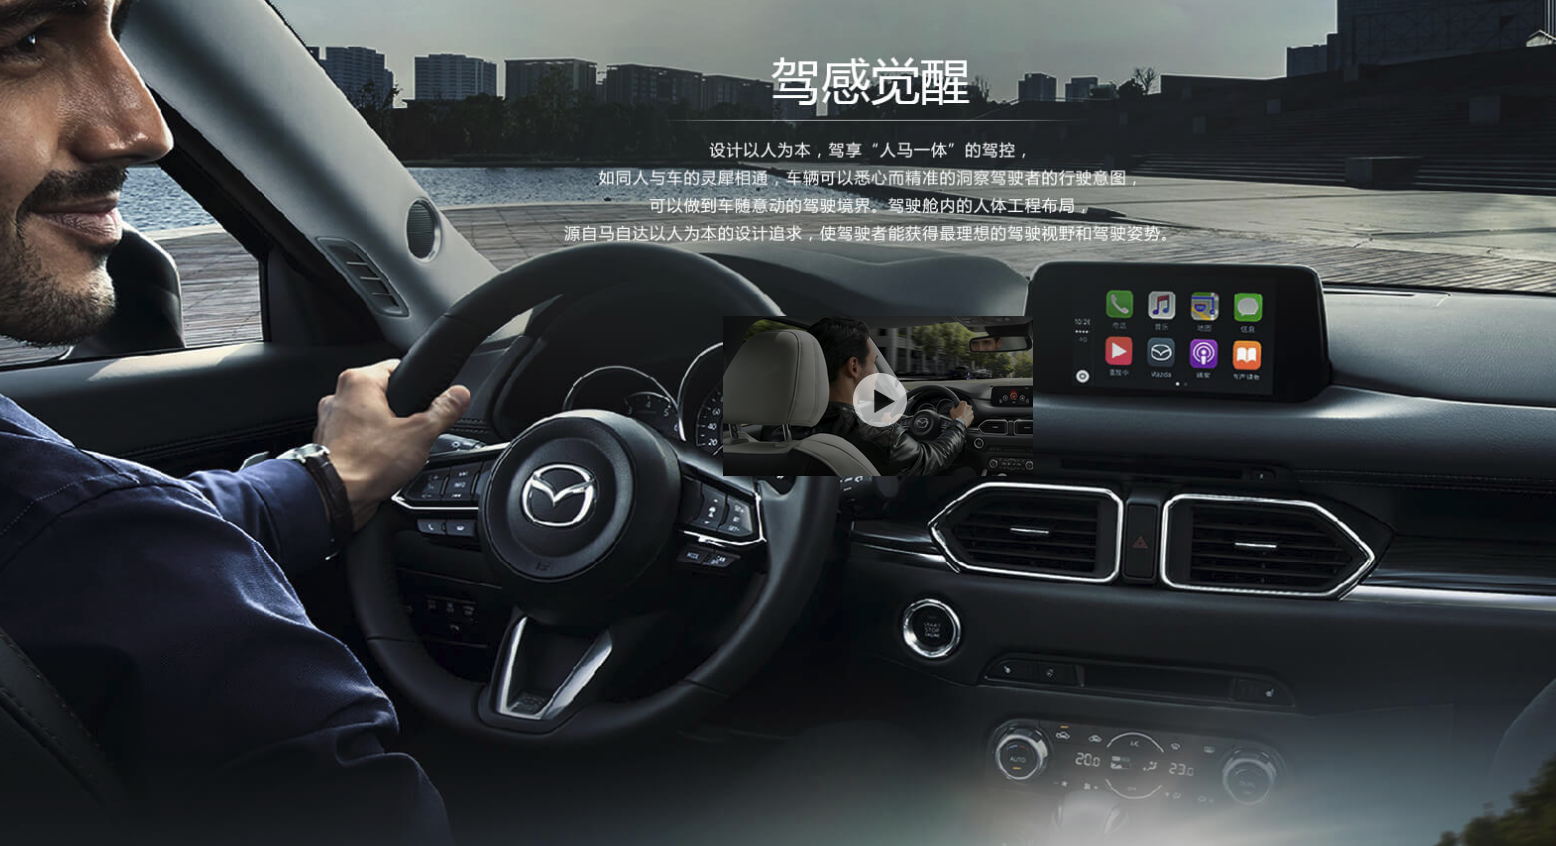 マツダコネクト 18年にマツダがapple Carplay Androidautoを提供する予定 18 03 30追記 K Blog